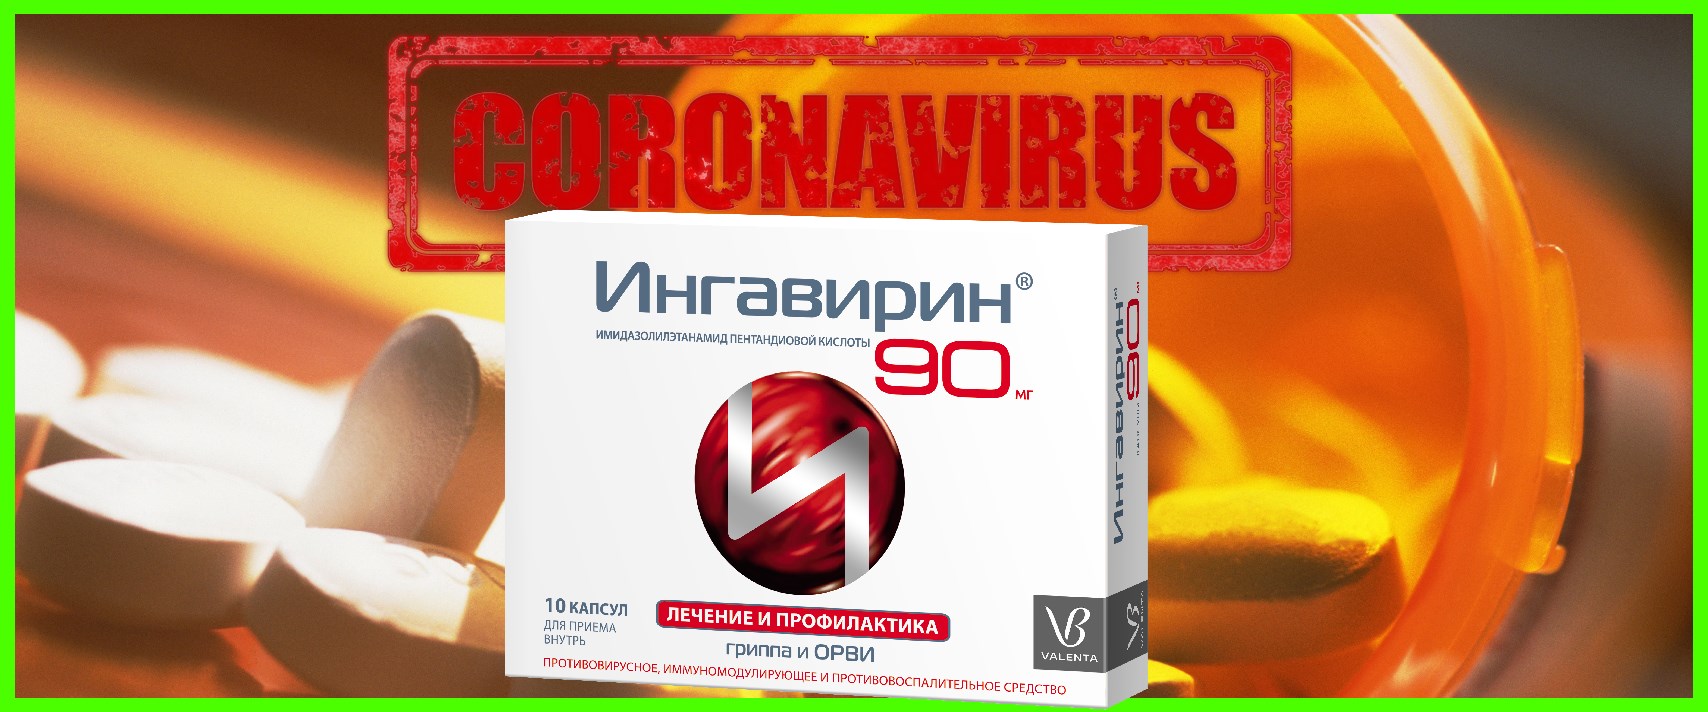 Ингавирин 90 коронавирус